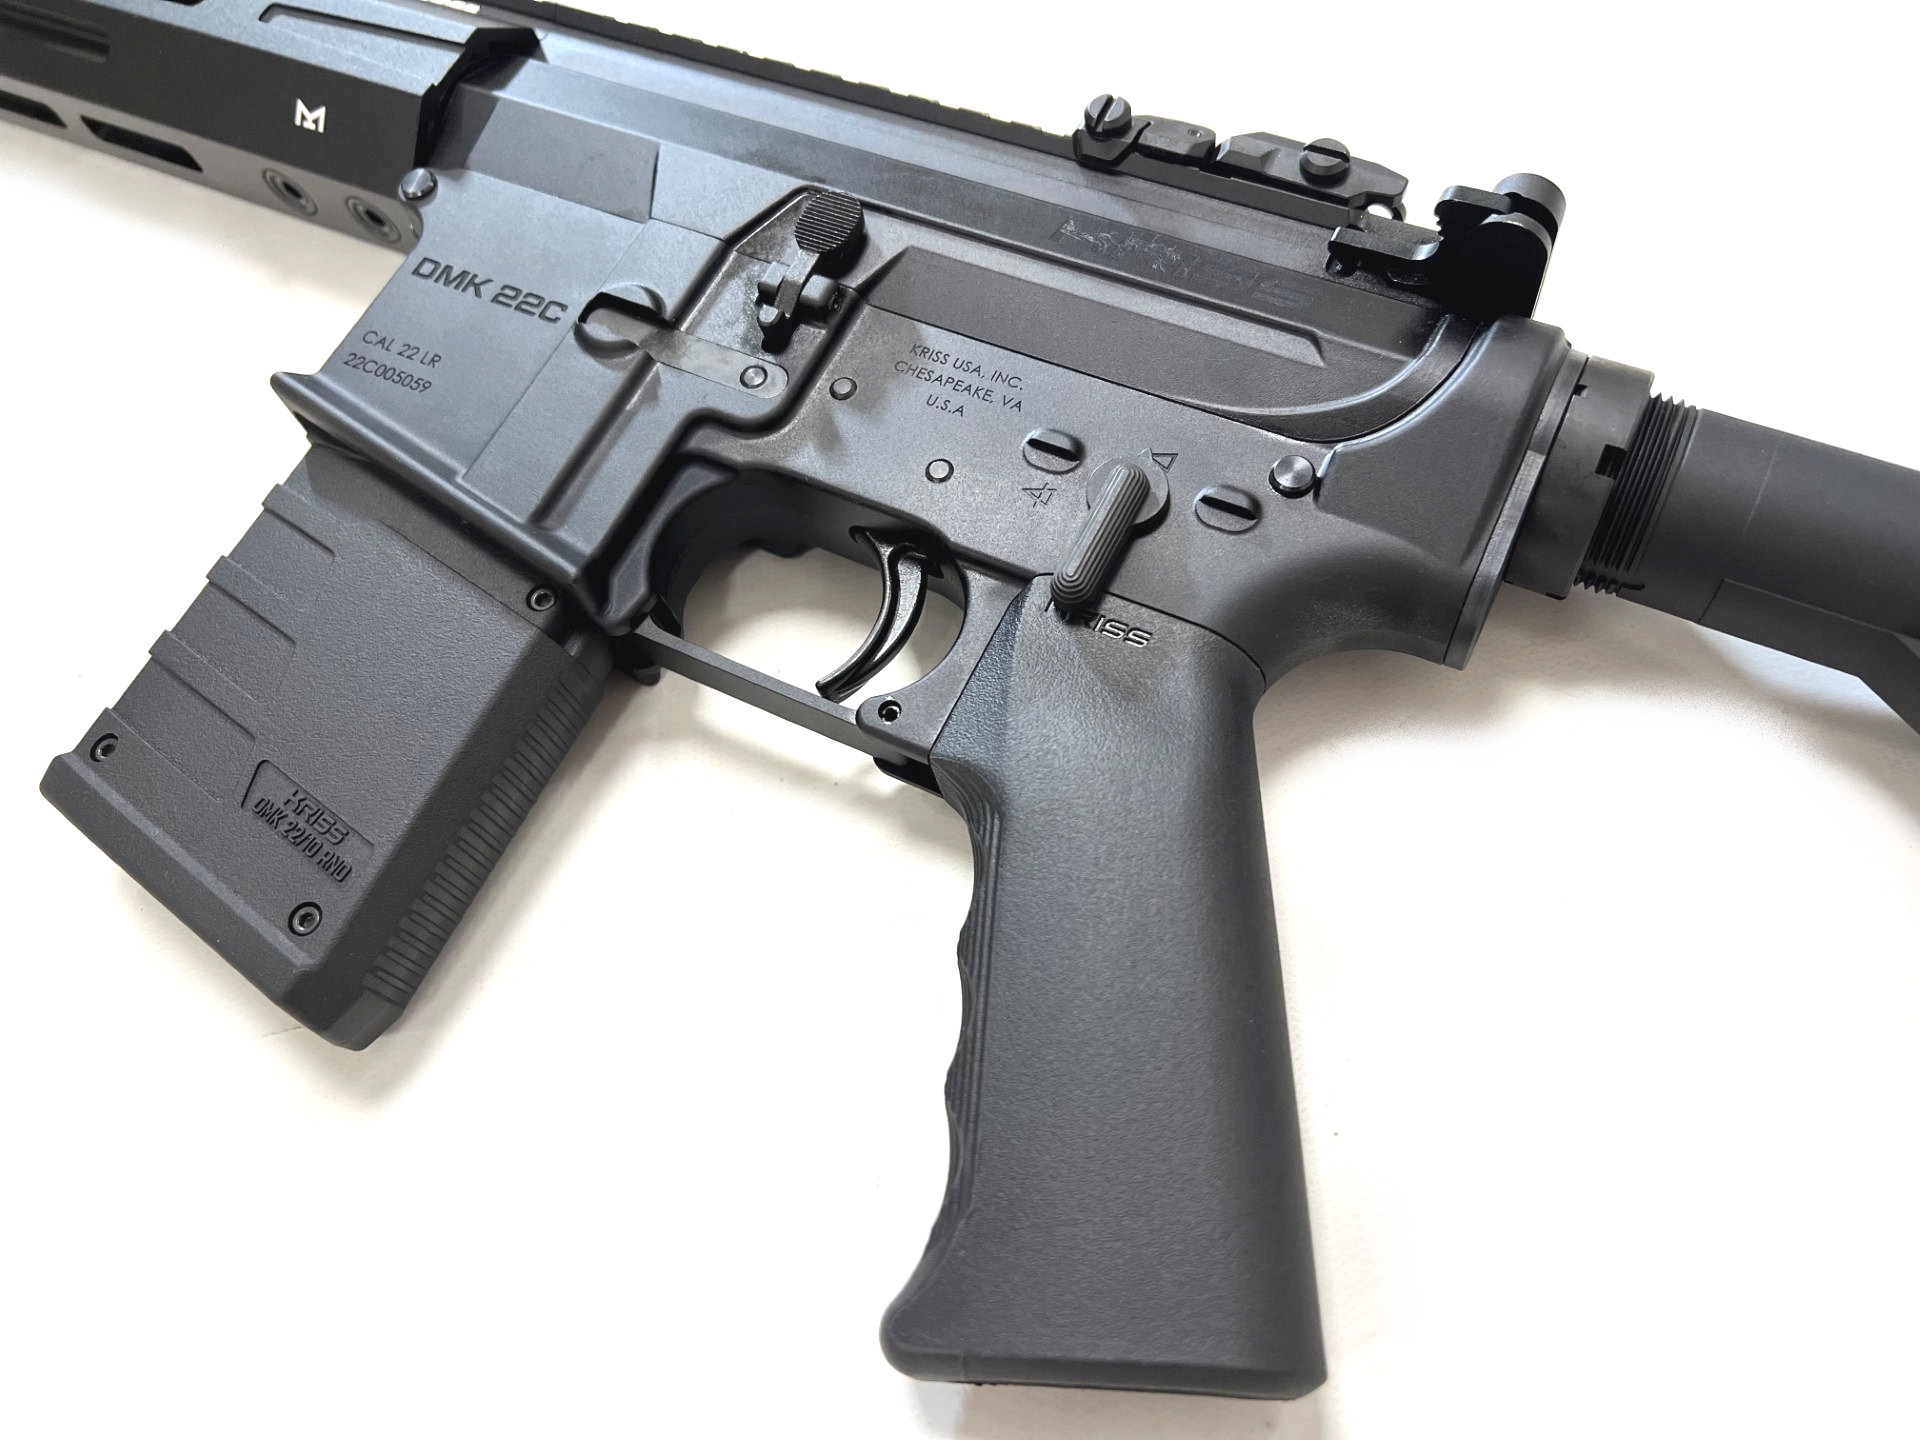 kriss defiance dmk22c semi auto rifle